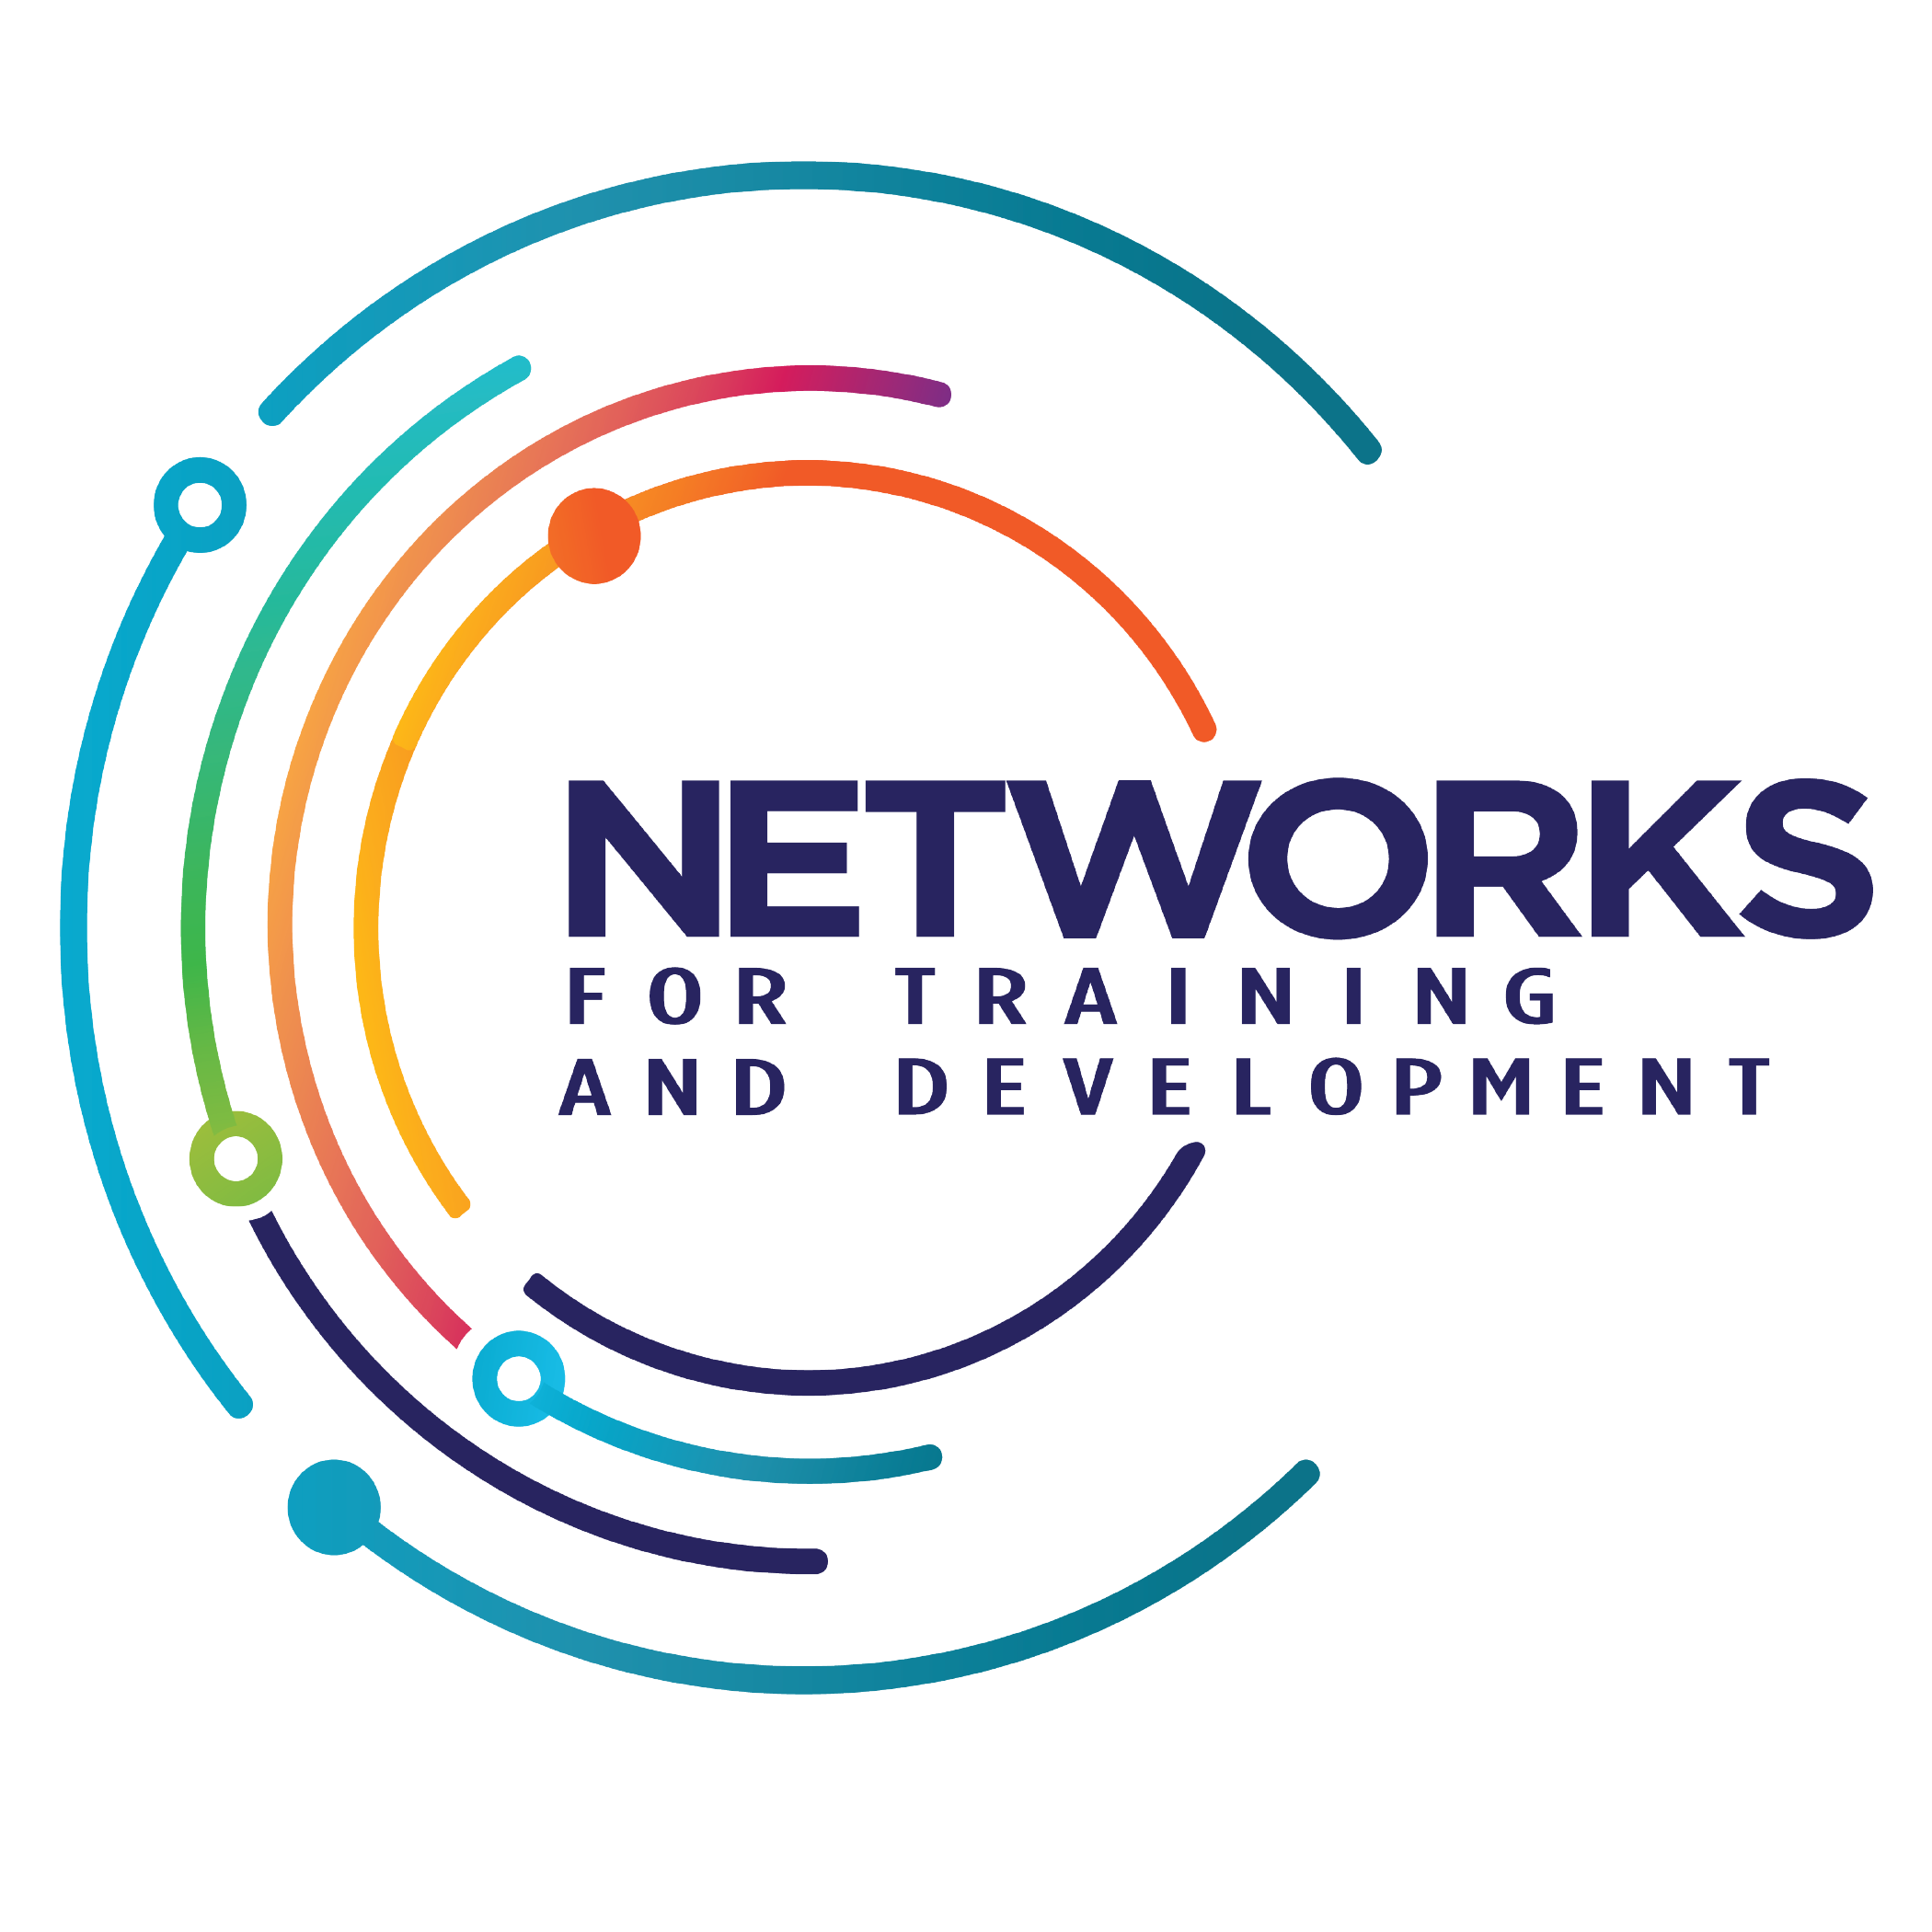 Inside Networks logo